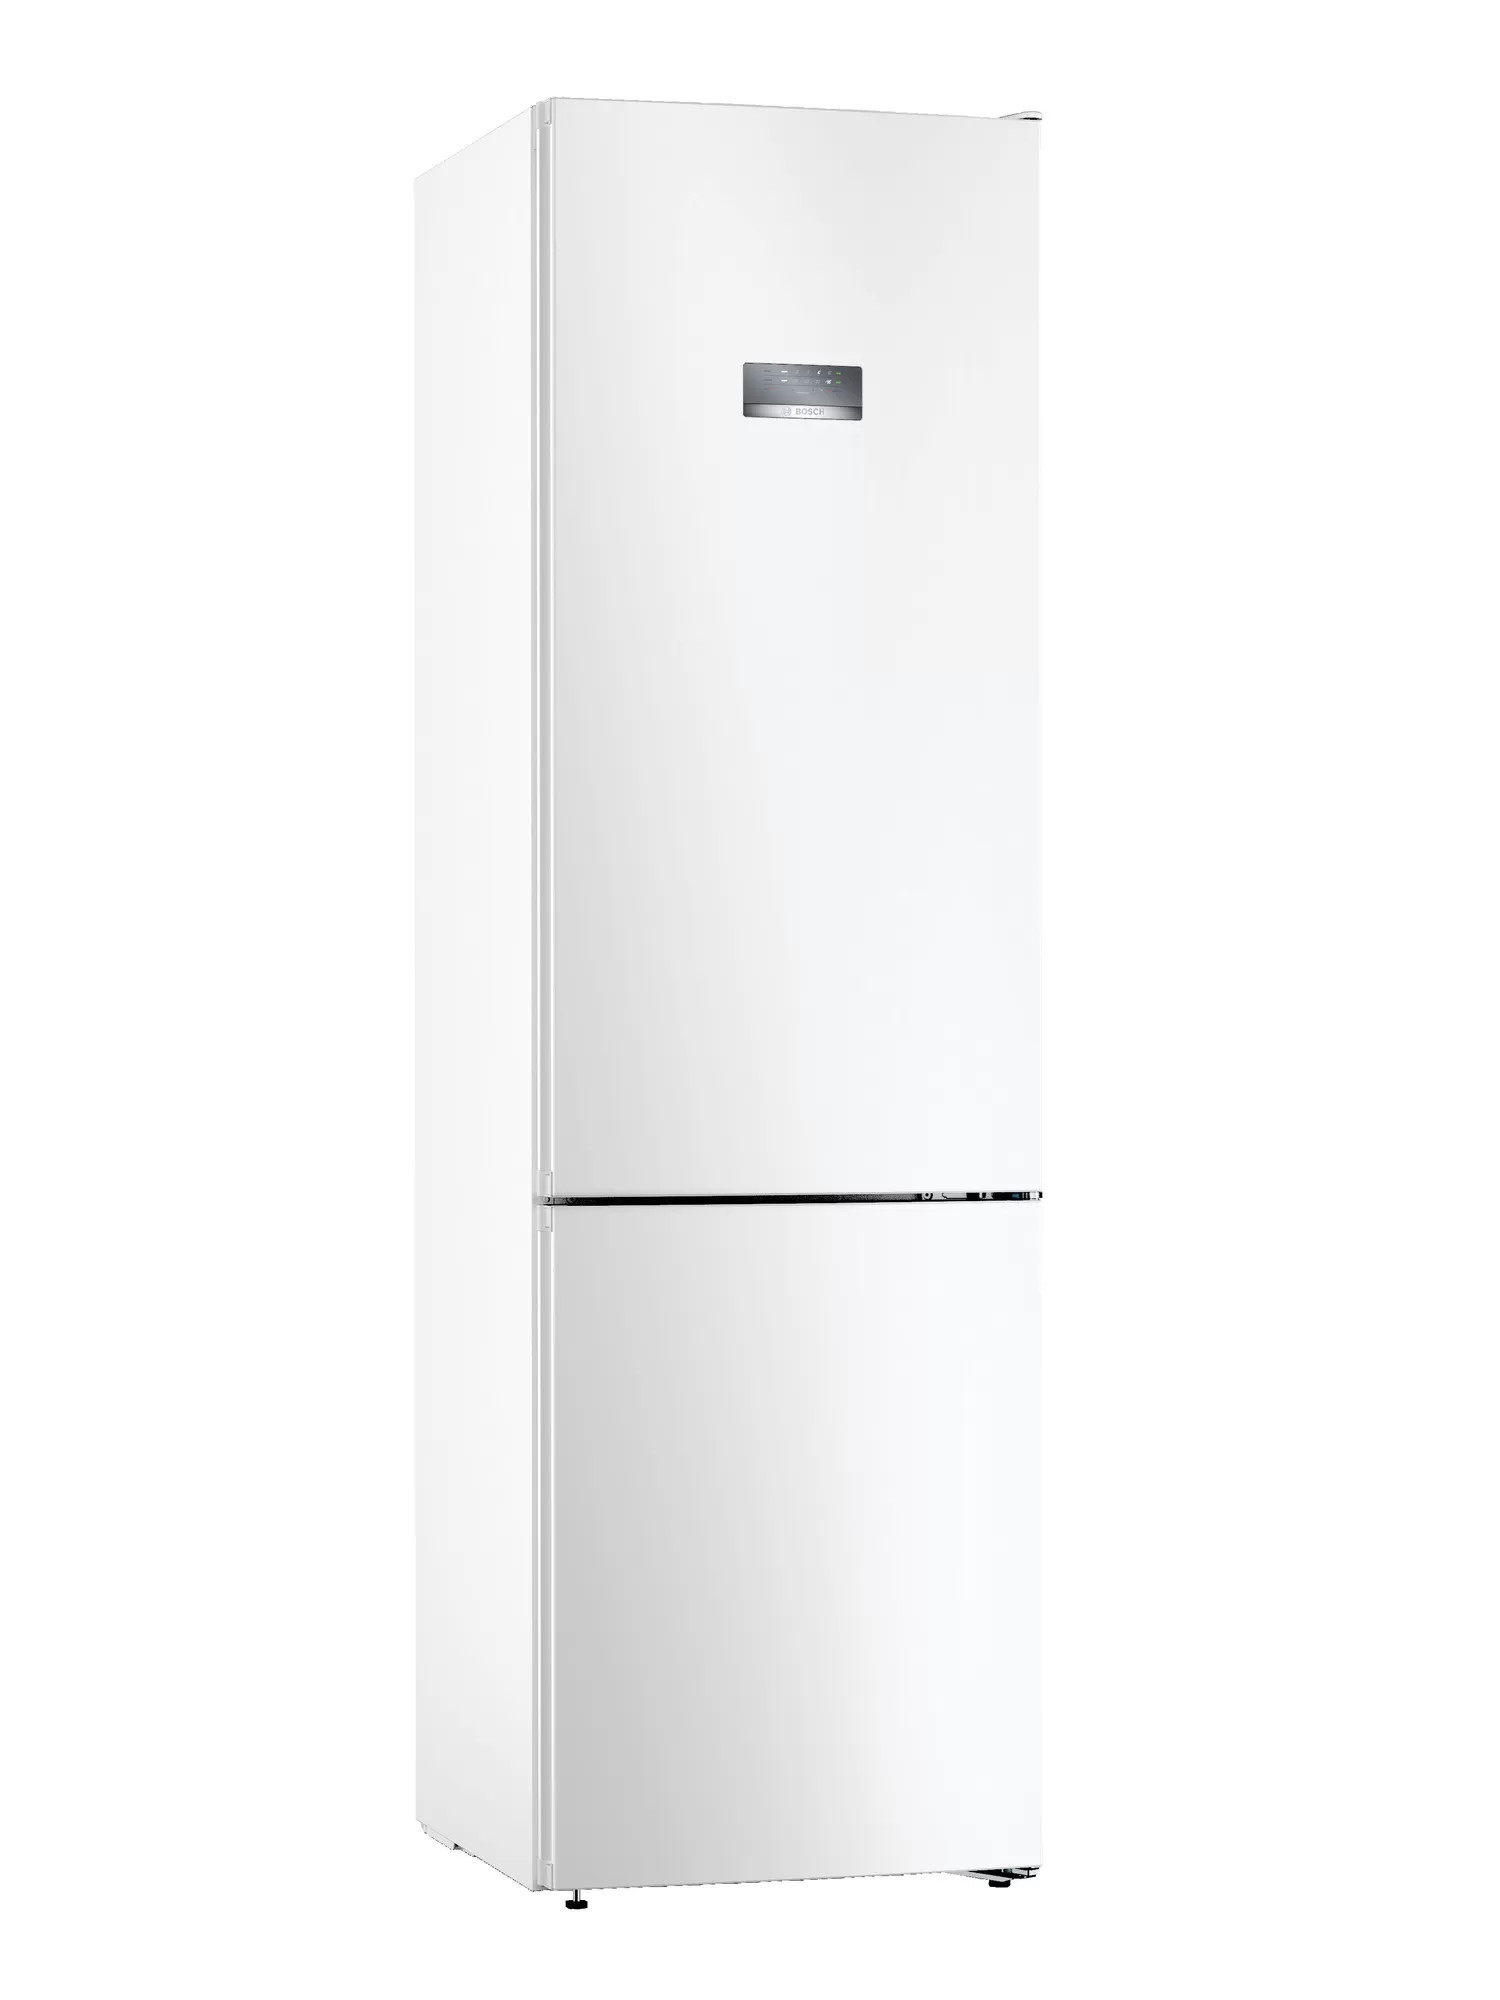 Холодильник BOSCH KGN39VW25R																		 — описание, фото, цены в интернет-магазине Премьер Техно